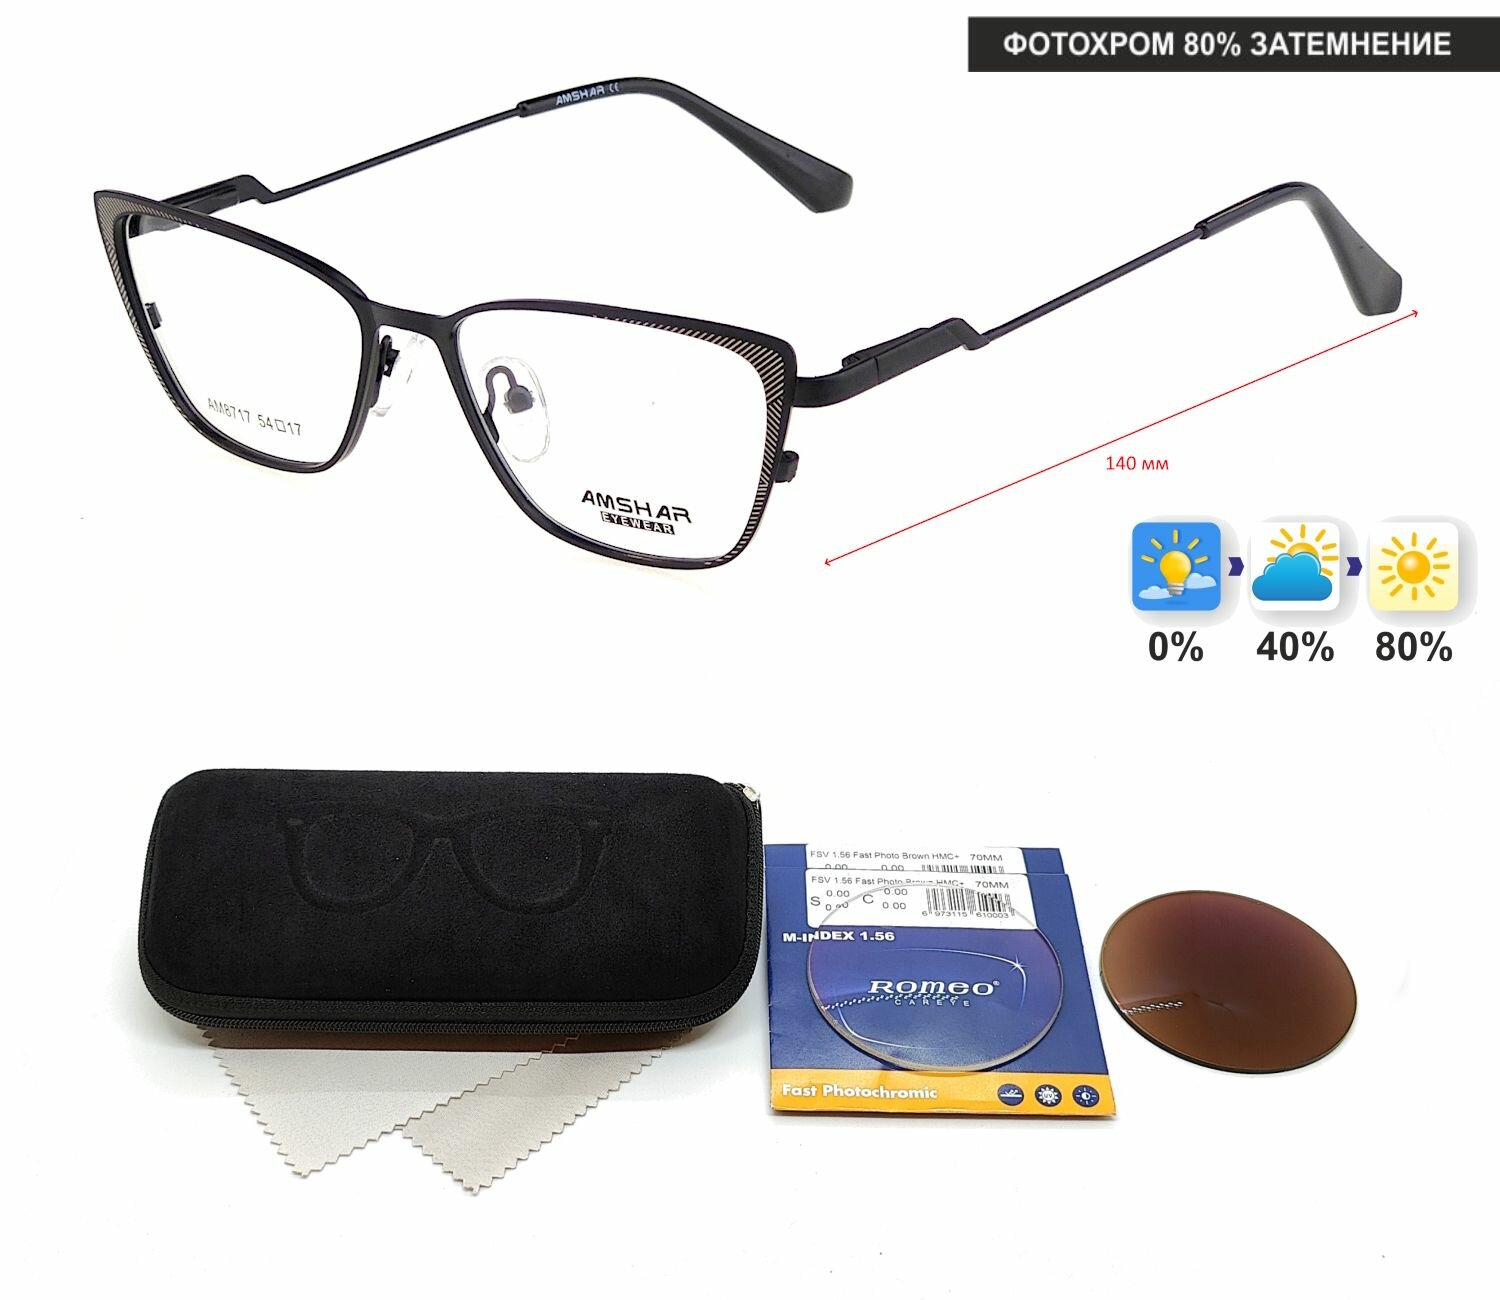 Фотохромные очки с футляром-змейка AMSHAR мод. 8717 Цвет 6 с линзами ROMEO 1.56 FAST Photocolor BROWN, HMC+ +3.50 РЦ 62-64